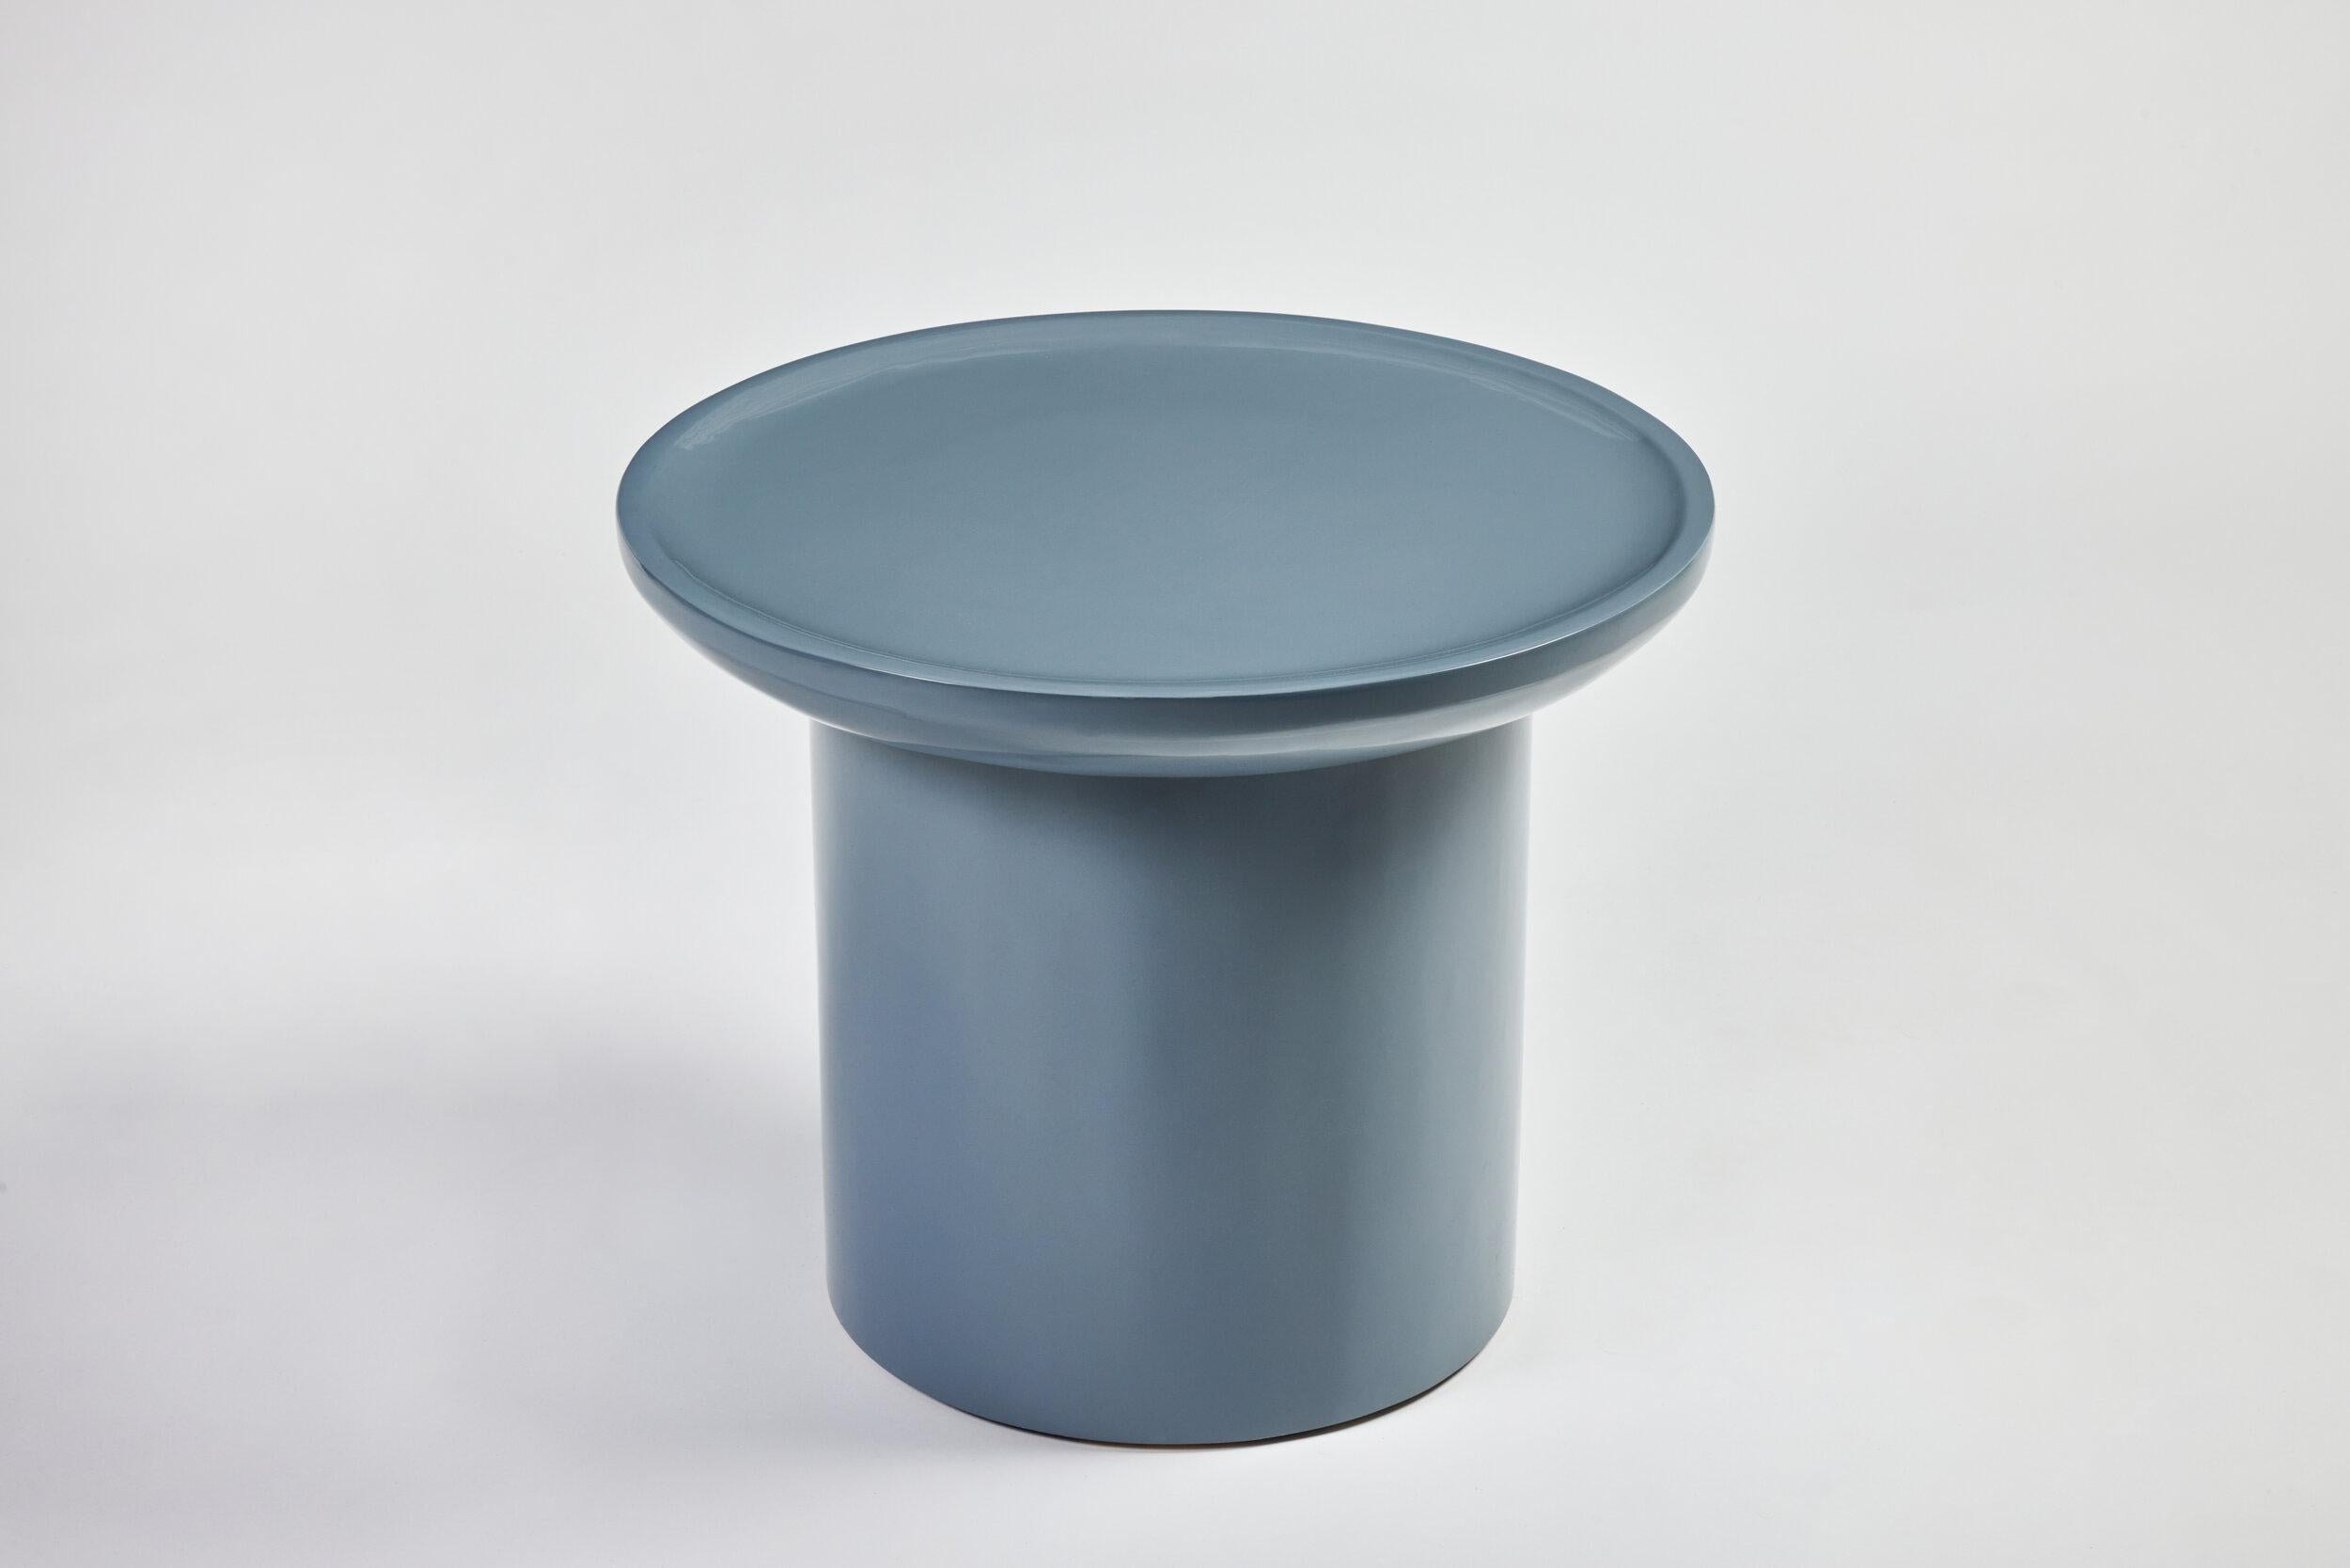 Der Findley Round Low Side Table von Martin & Brockett zeichnet sich durch die für die Collection'S typische geschwungene Lippe und den runden Sockel aus. Abgebildet in Gletscherblau handpoliertem Hochglanzlack 

H 19.75 in. x B 24 in.

Teil unserer